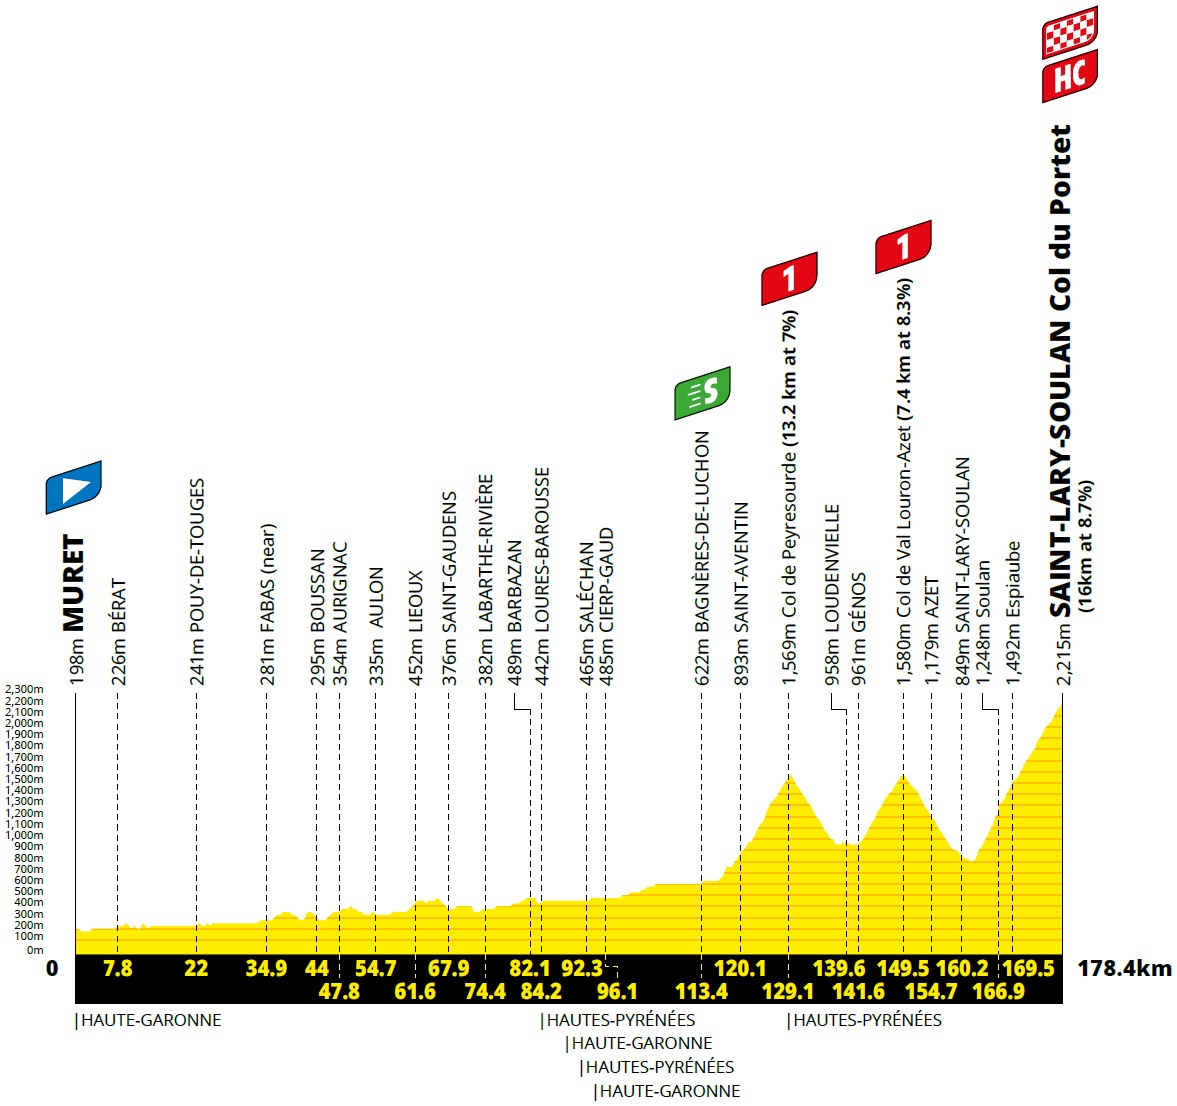 Hhenprofil Tour de France 2021 - Etappe 17